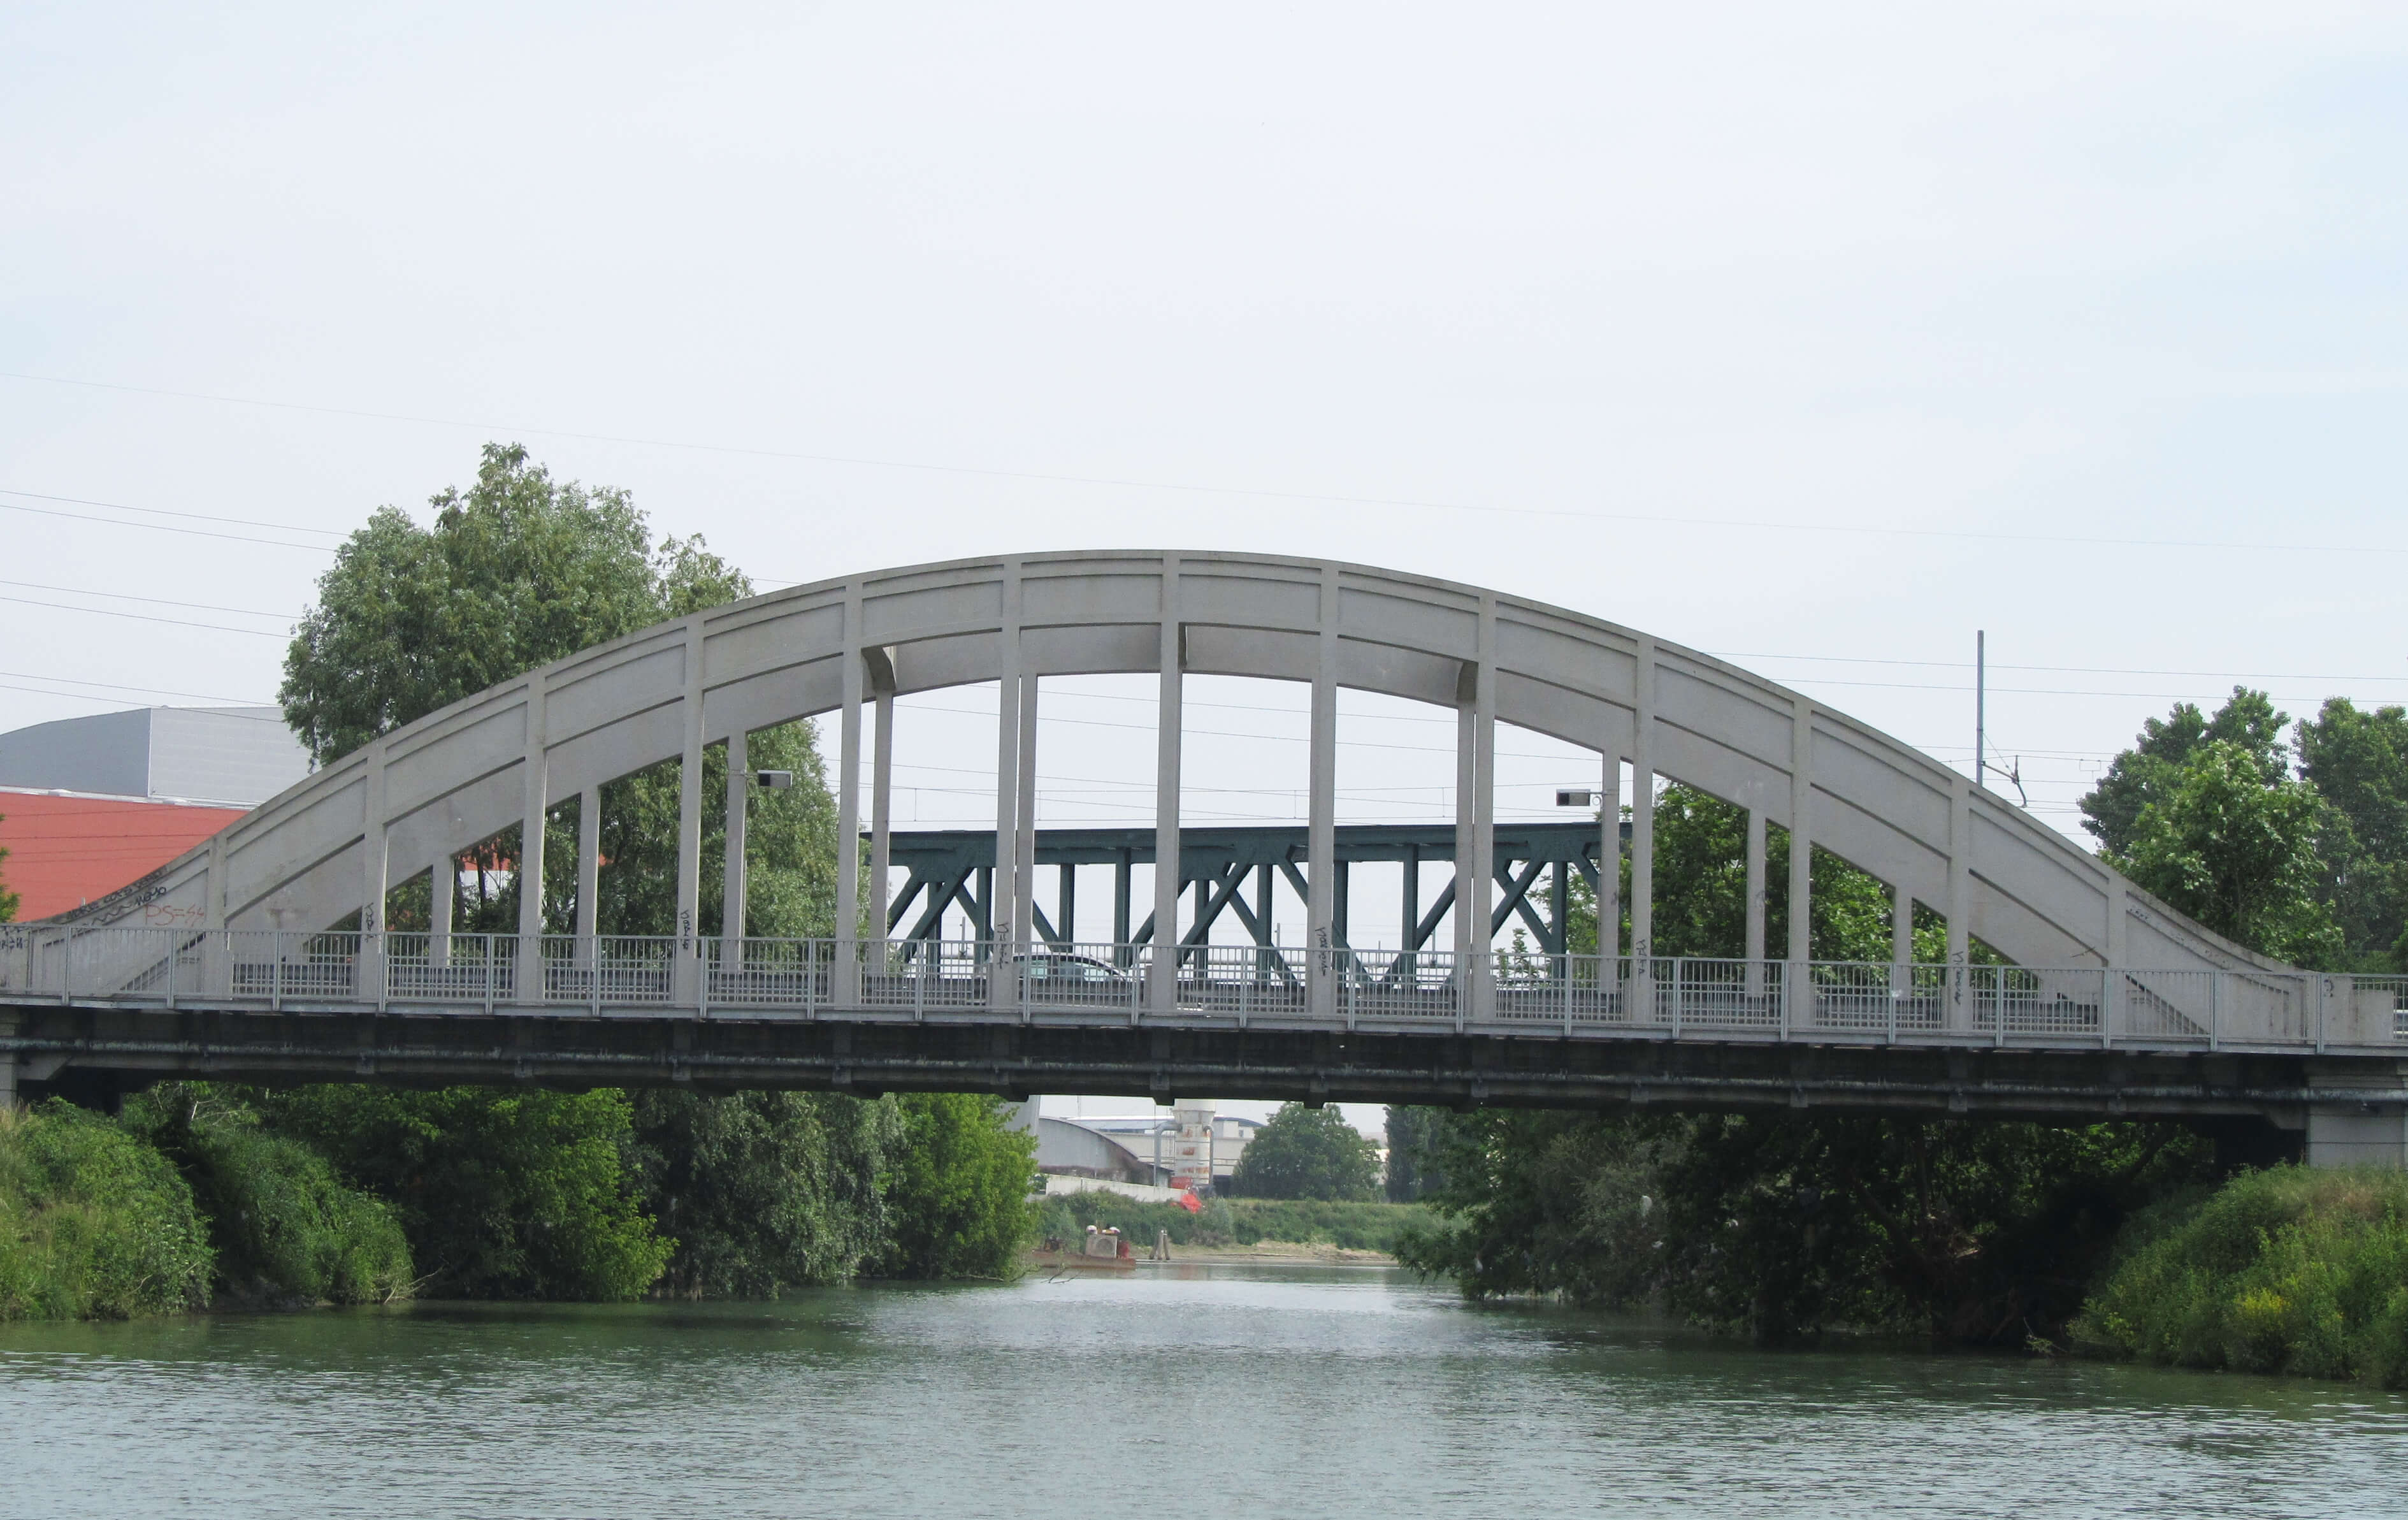 Ponte stradale pross scaric S. gregorio via Tommaso savini